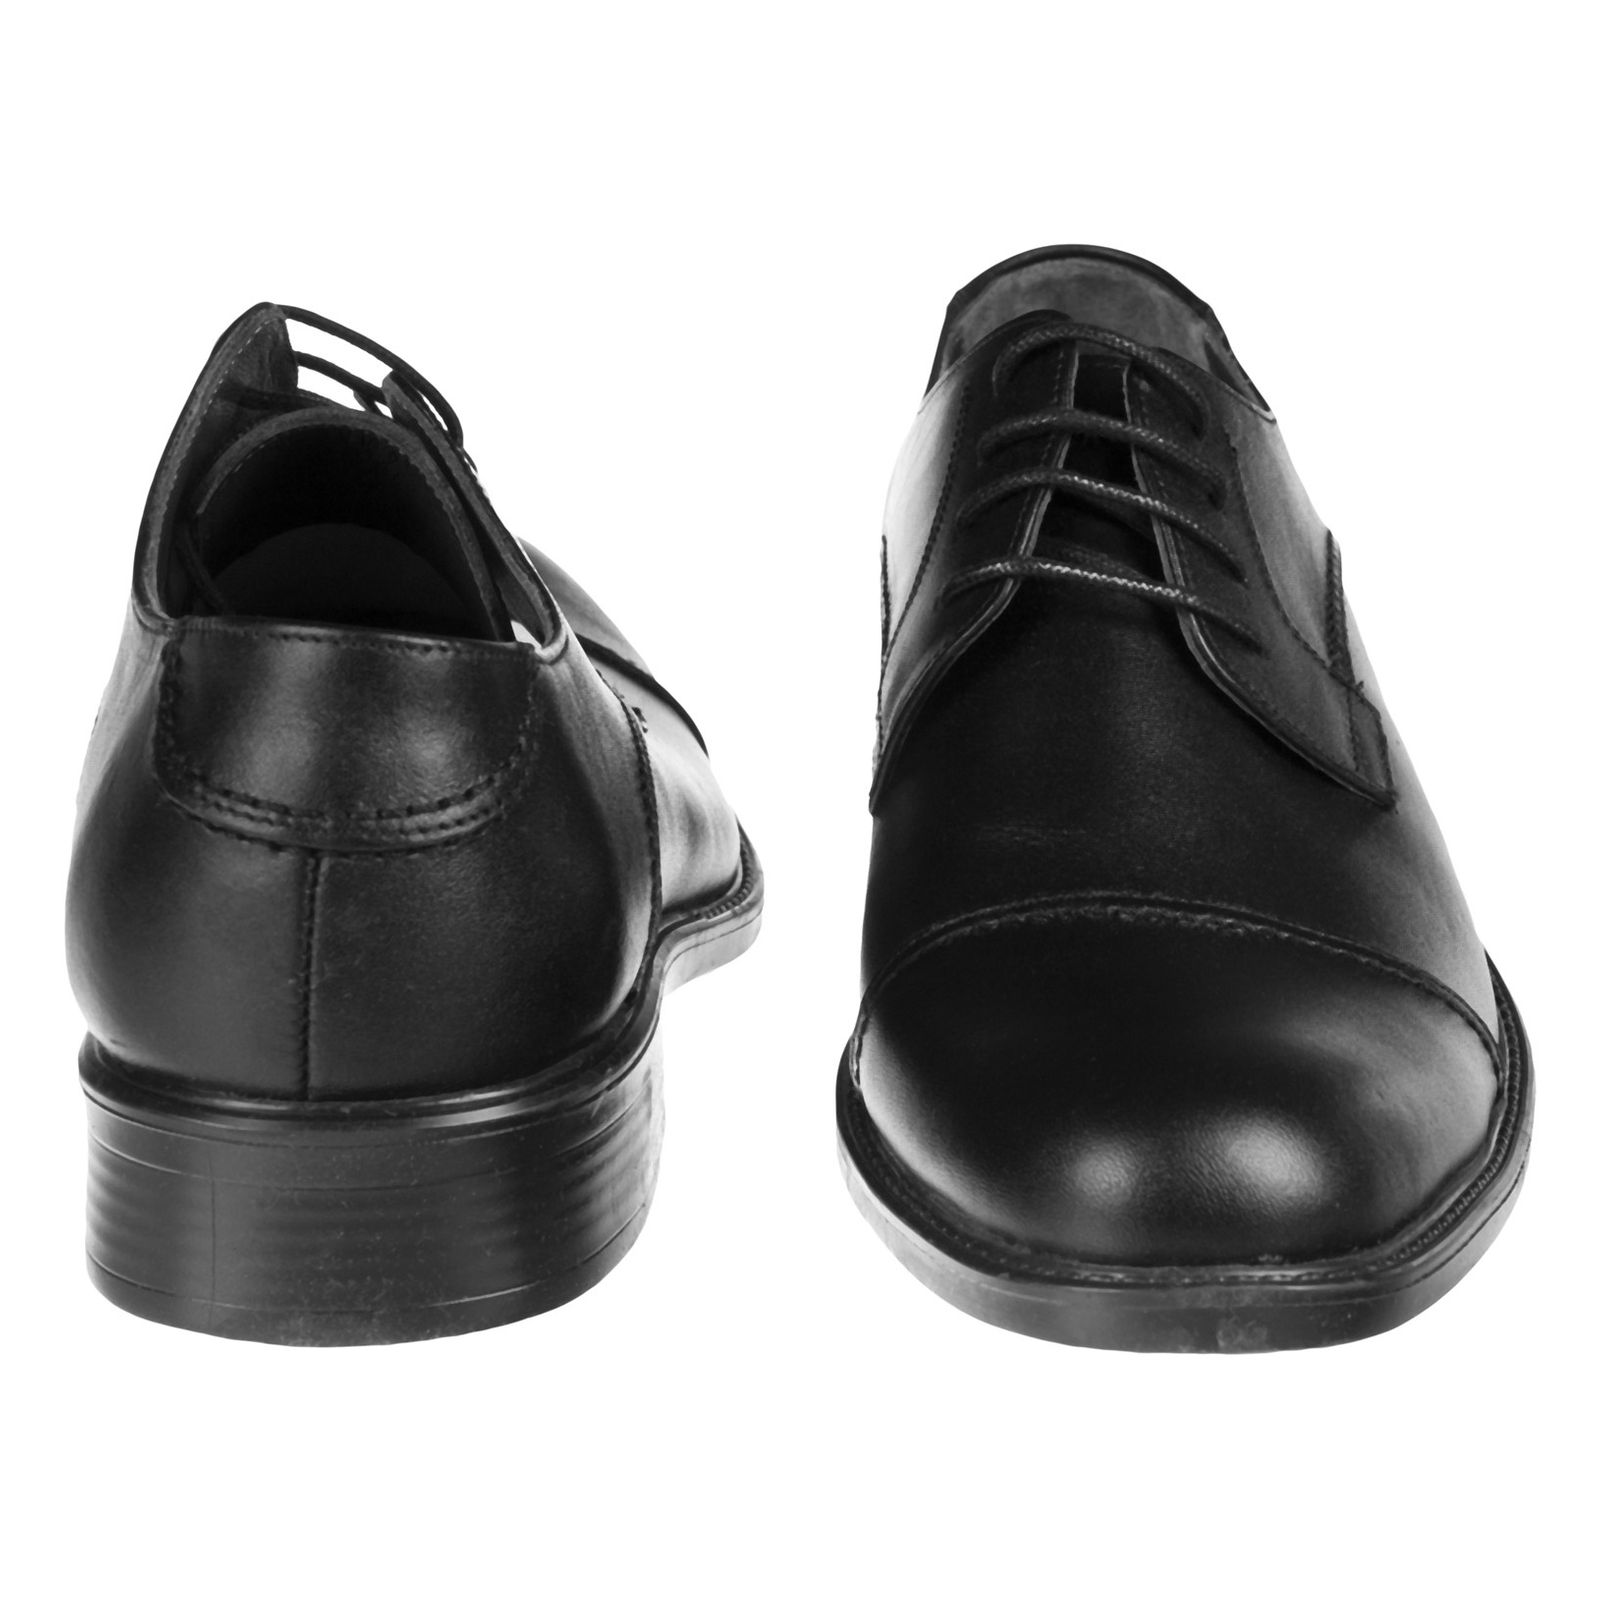 کفش مردانه دلفارد مدل 7219c503-101 - مشکی - 5